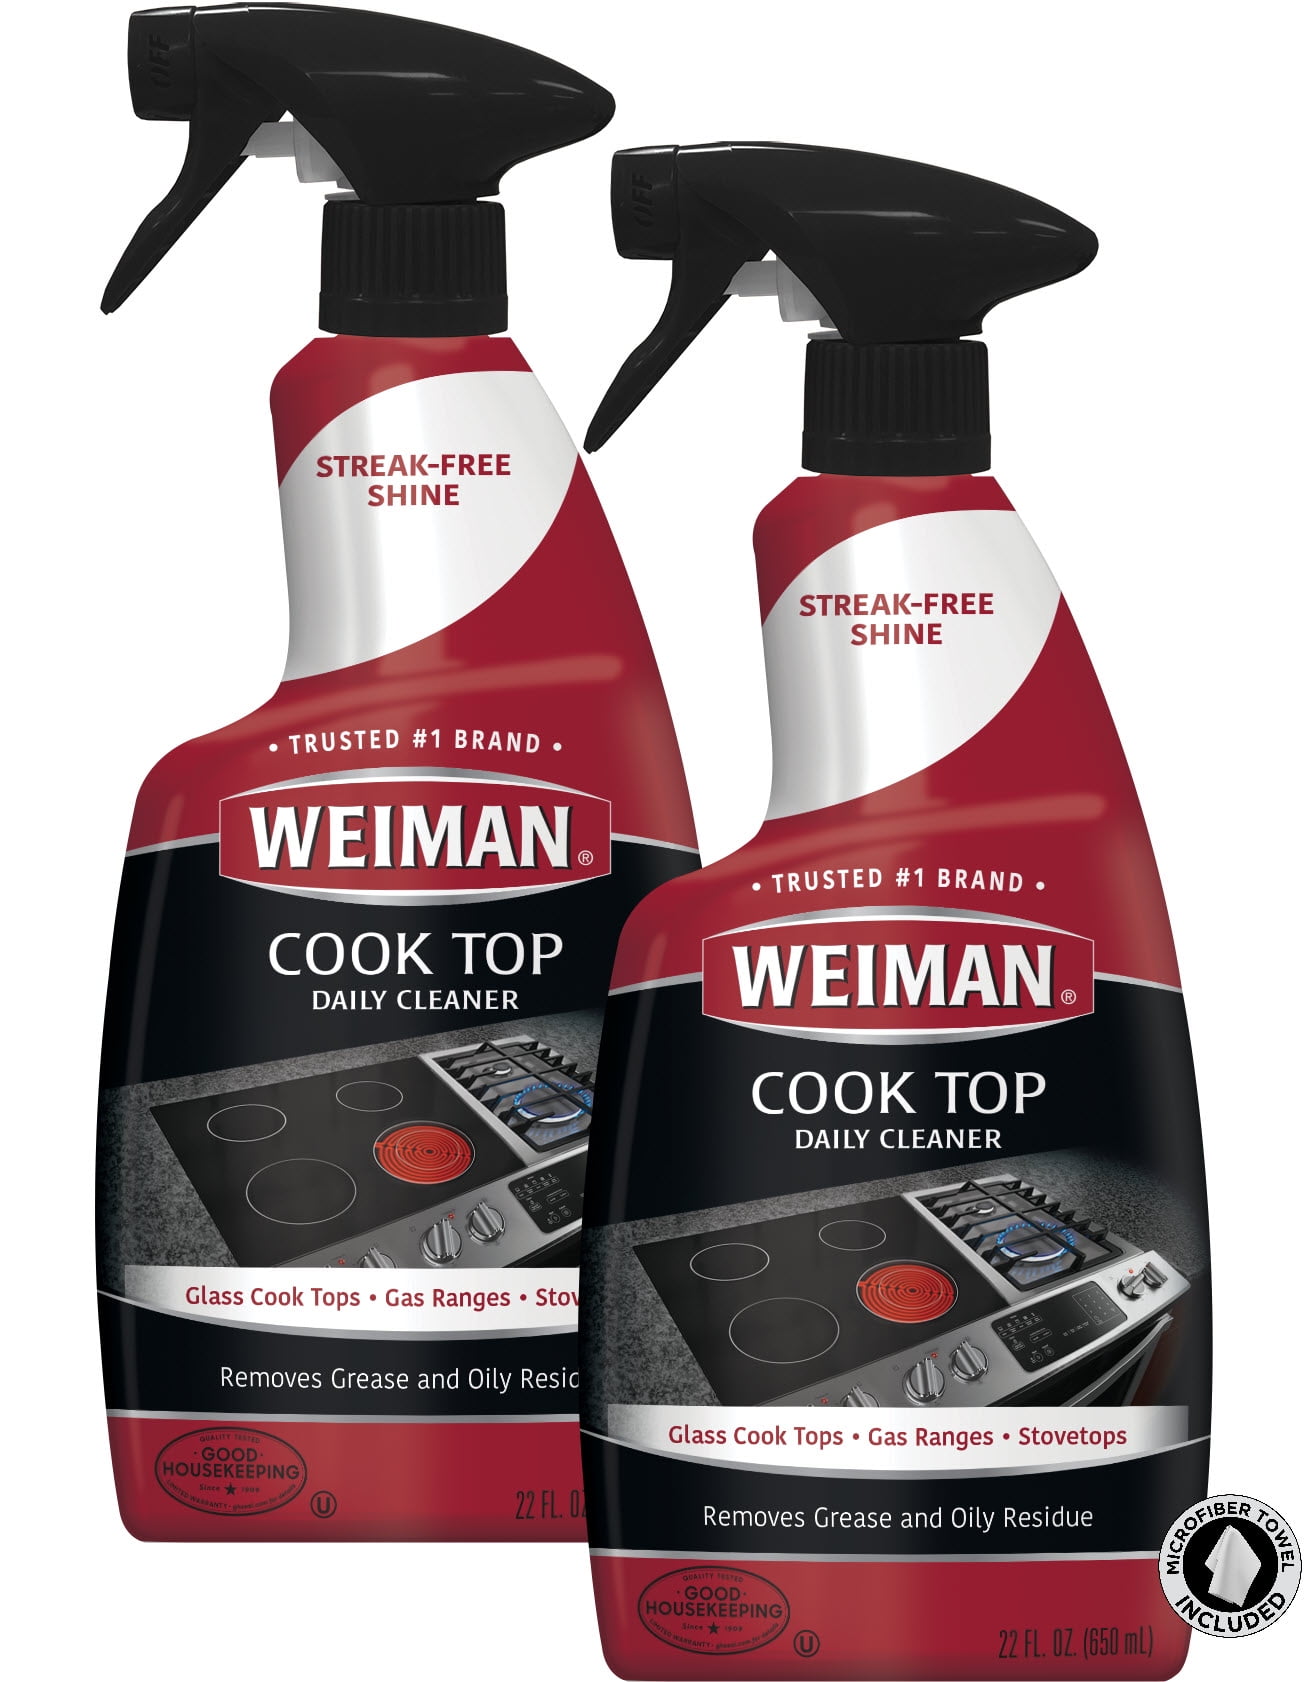 Weiman 24 oz. Weiman Stove & Oven Heavy Duty Cleaner 598 - The